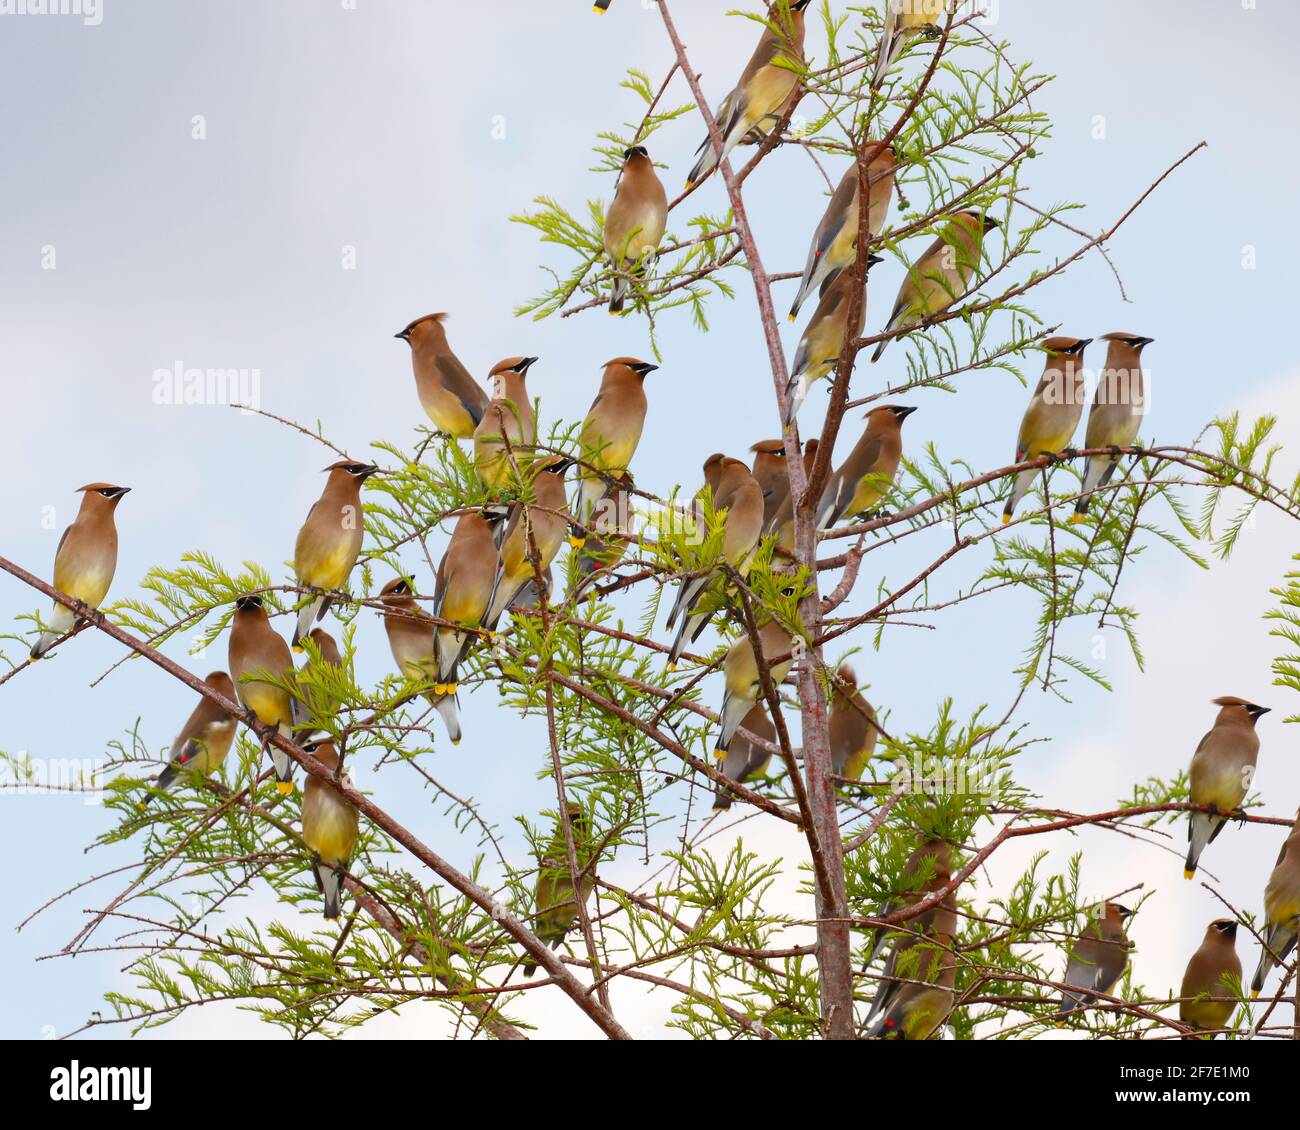 Un rebaño de alas de cedro, Bombycilla cedrorum, encaramado en cipreses. Foto de stock